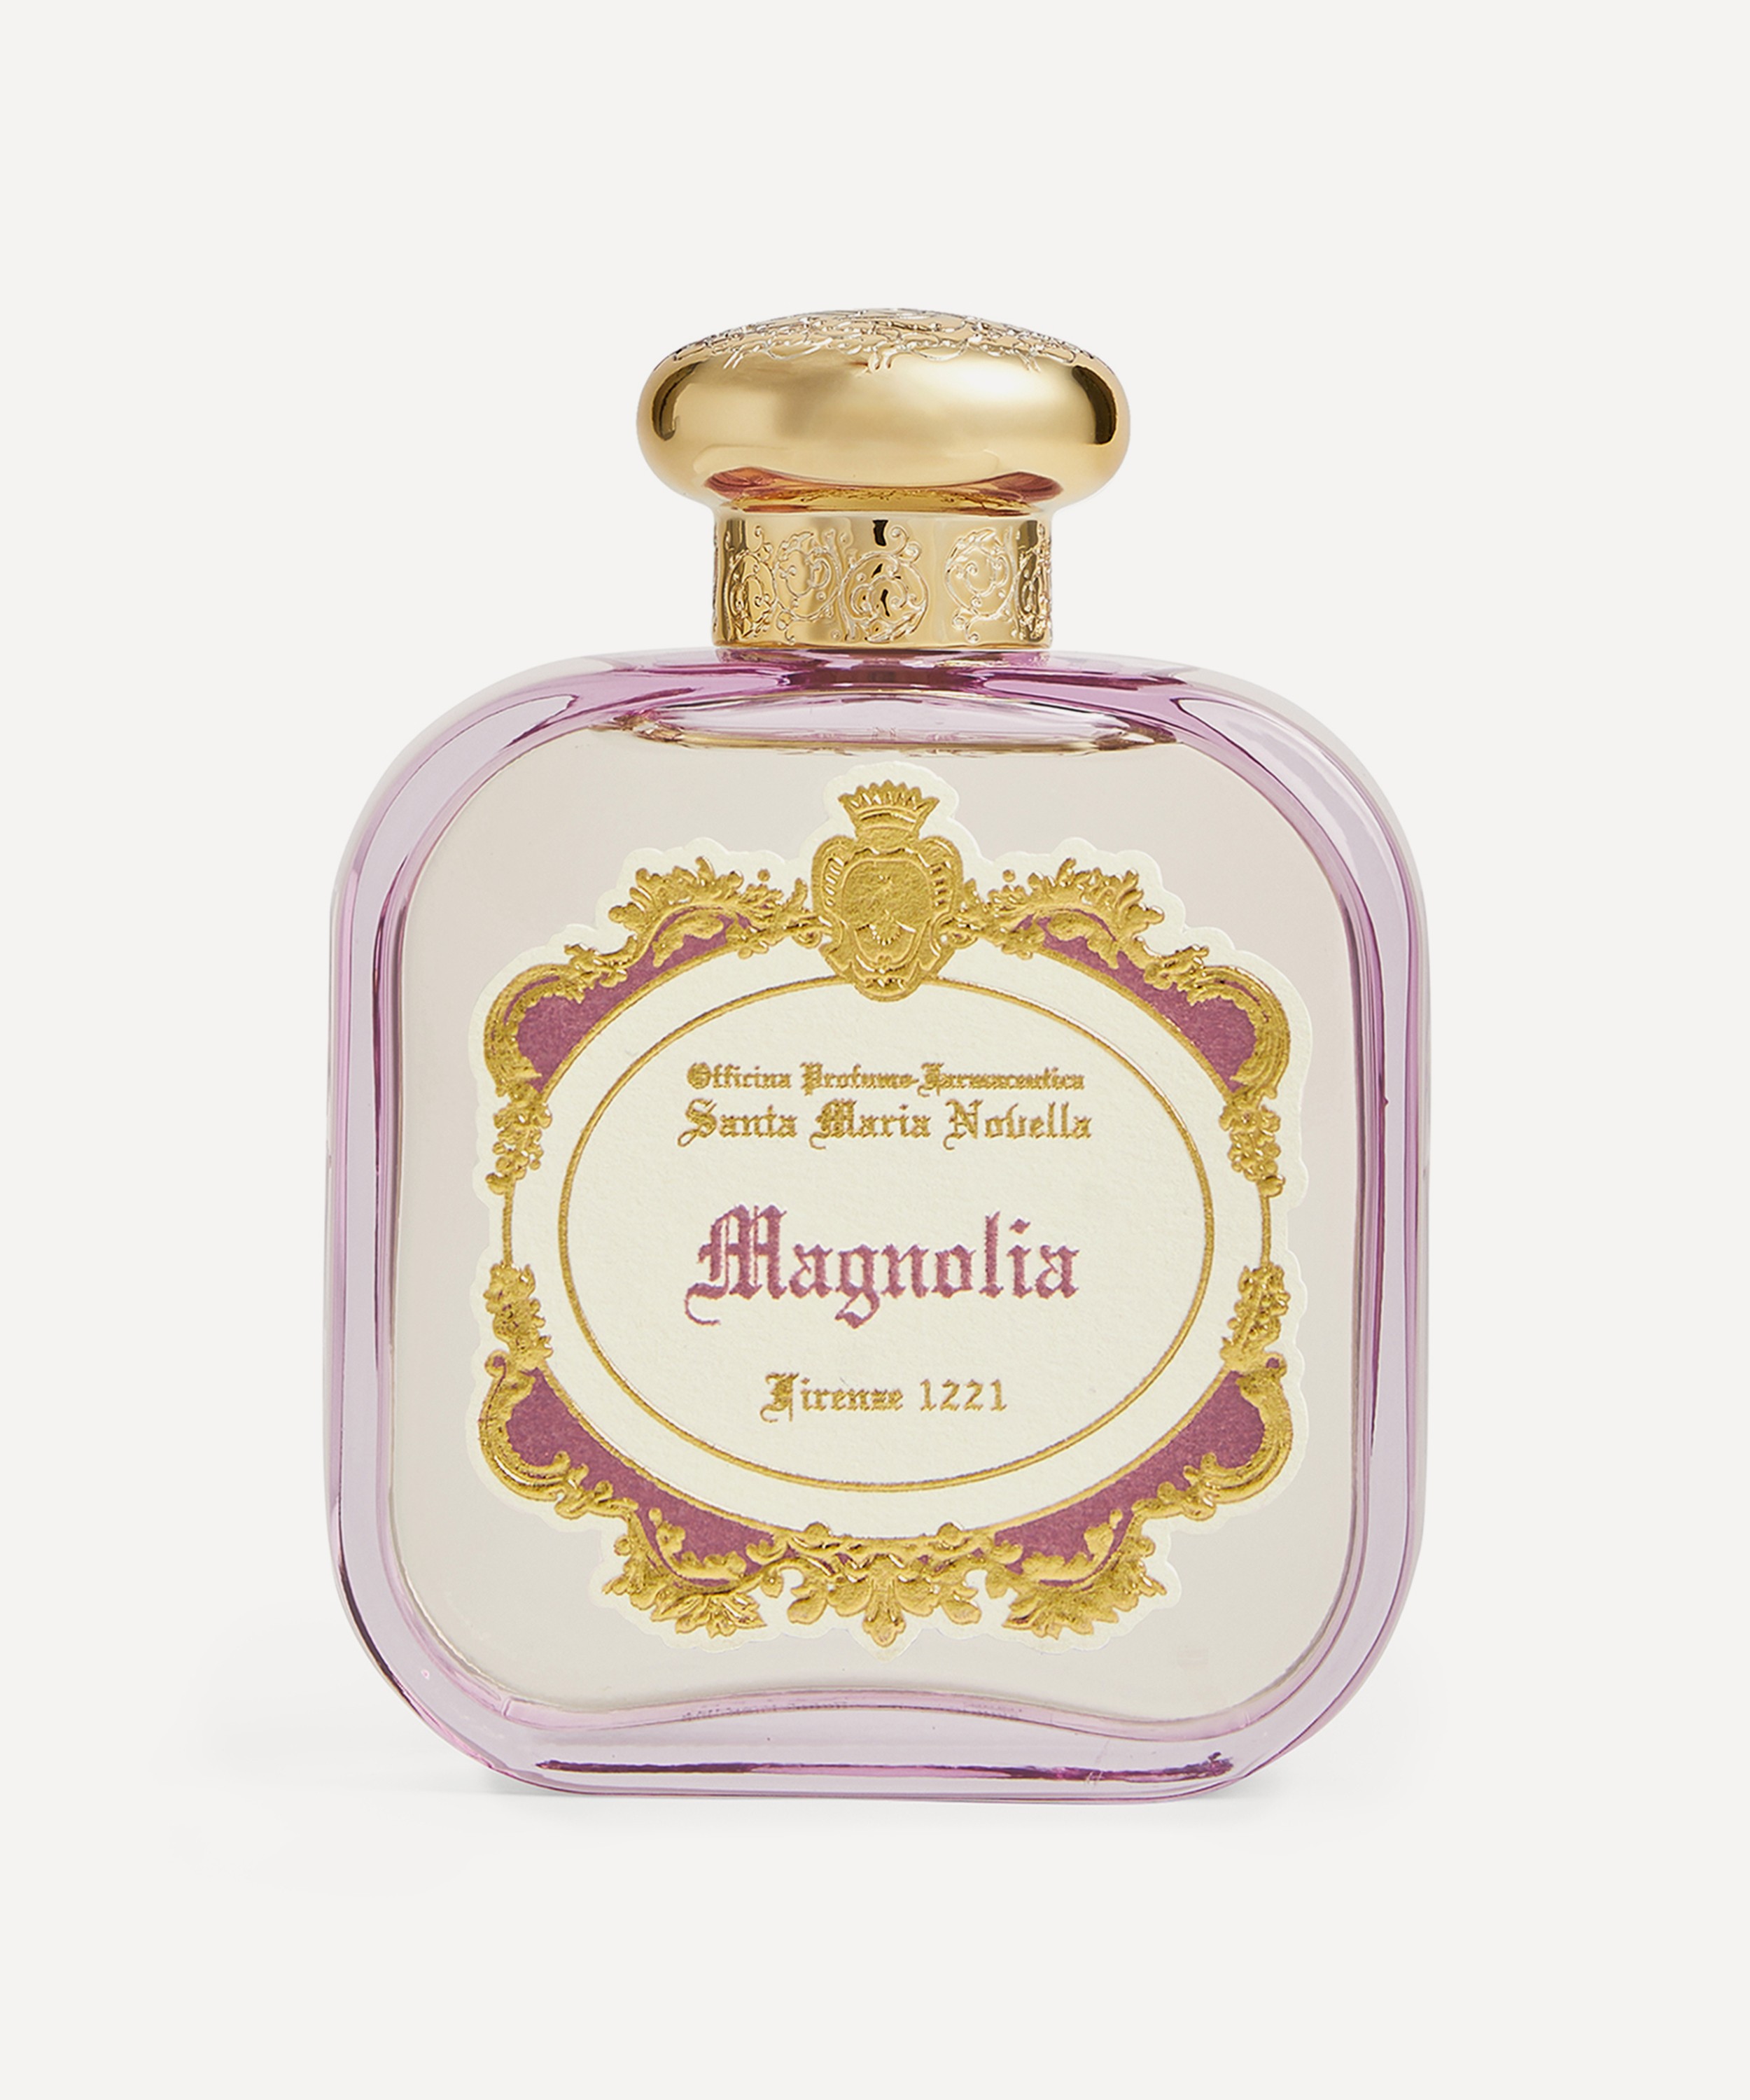 Officina Profumo-Farmaceutica di Santa Maria Novella - Magnolia Eau de Parfum 100ml